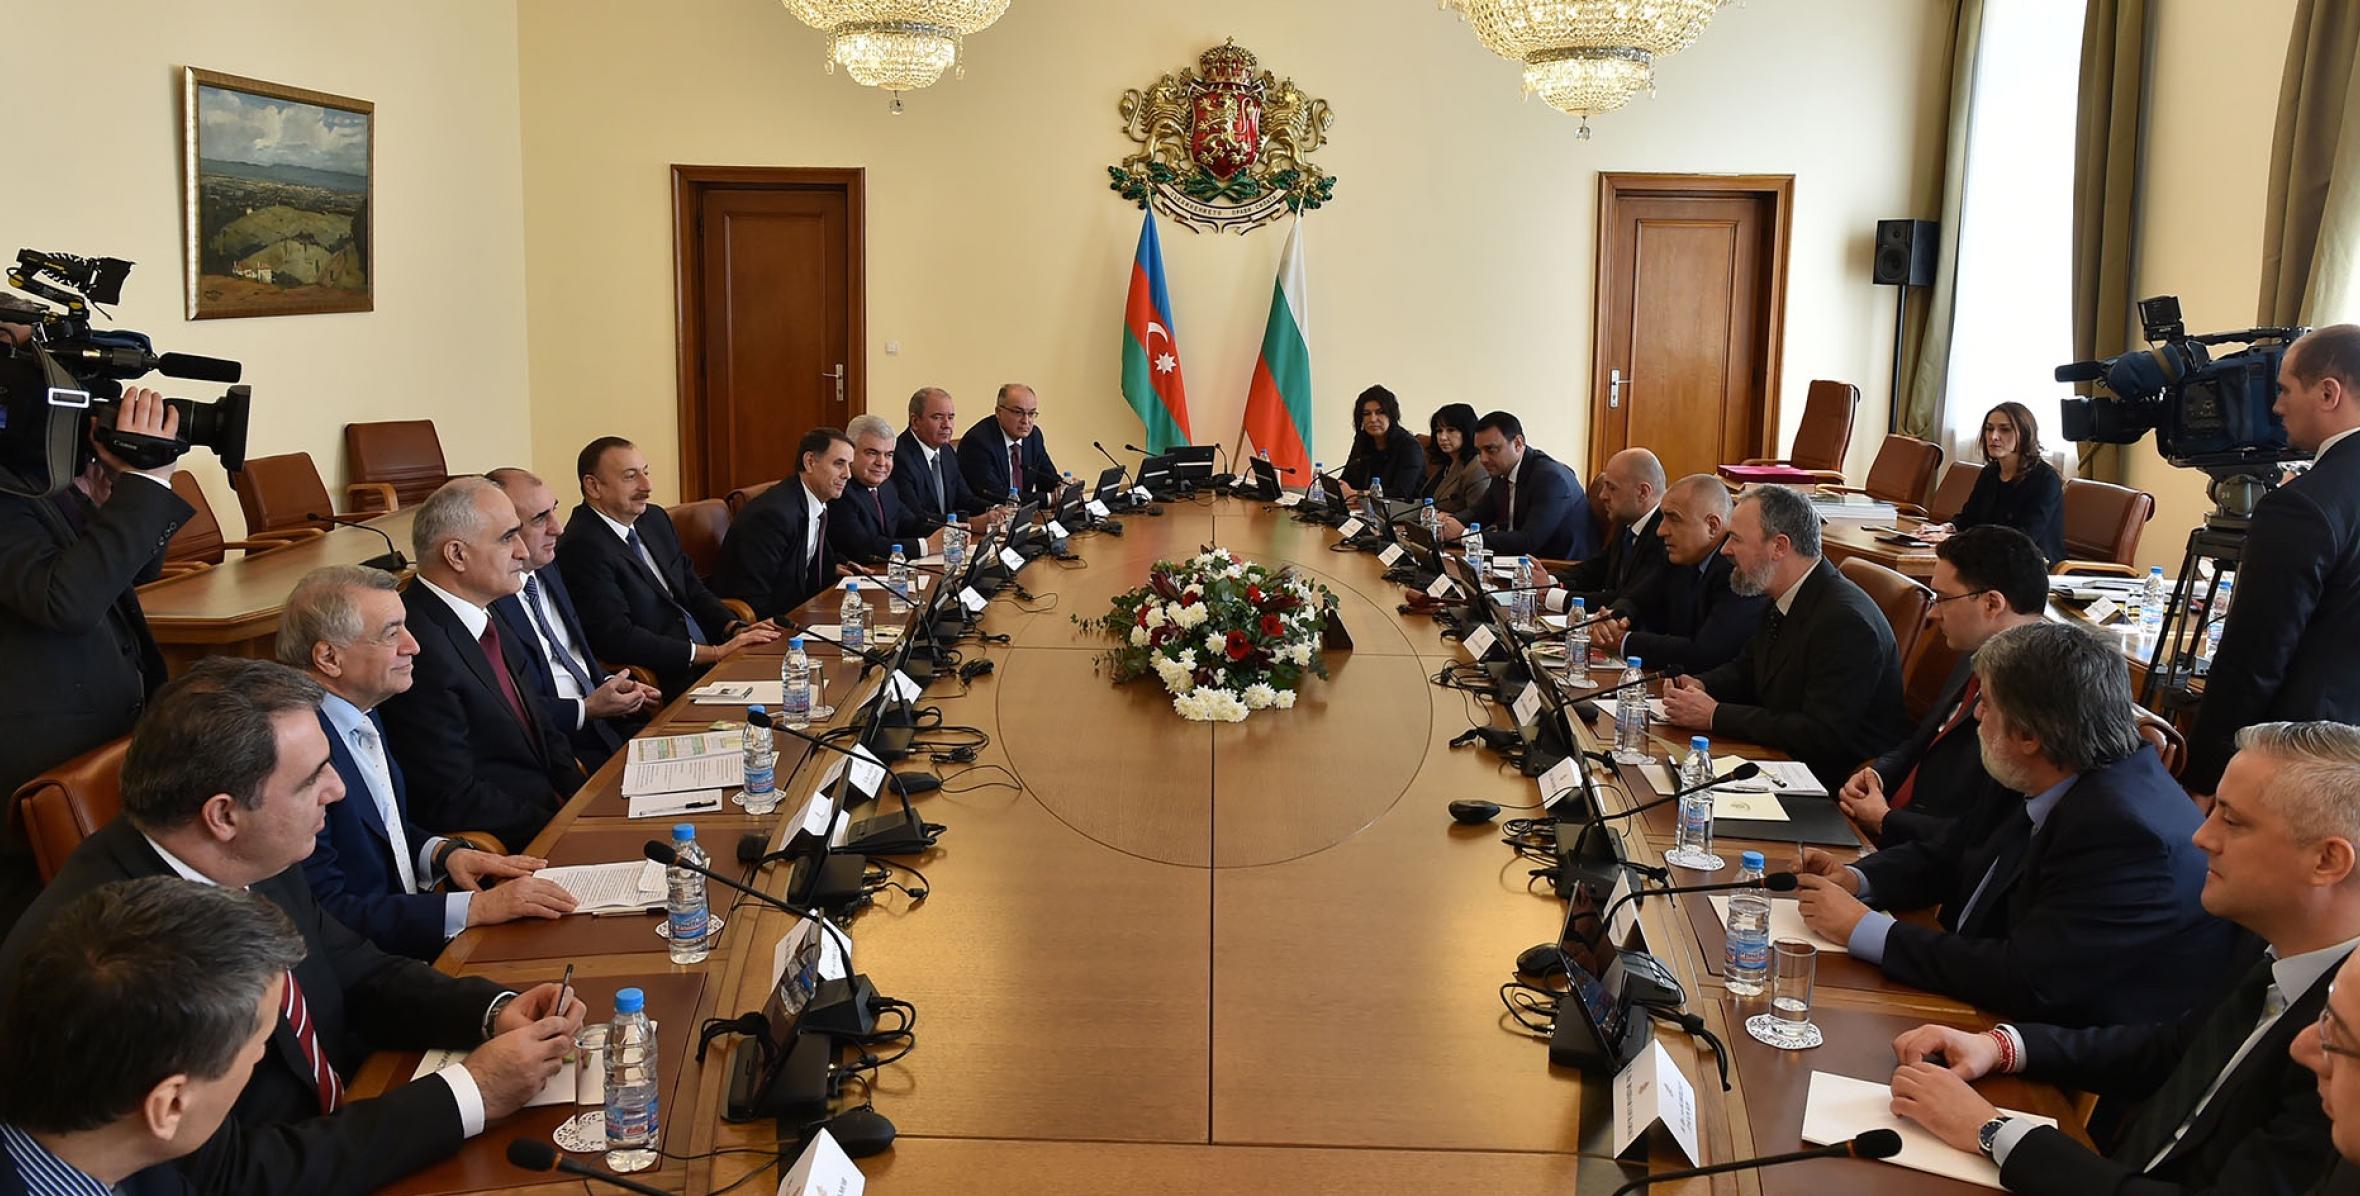 Состоялась встреча Ильхама Алиева с премьер-министром Болгарии Бойко Борисовым в расширенном составе